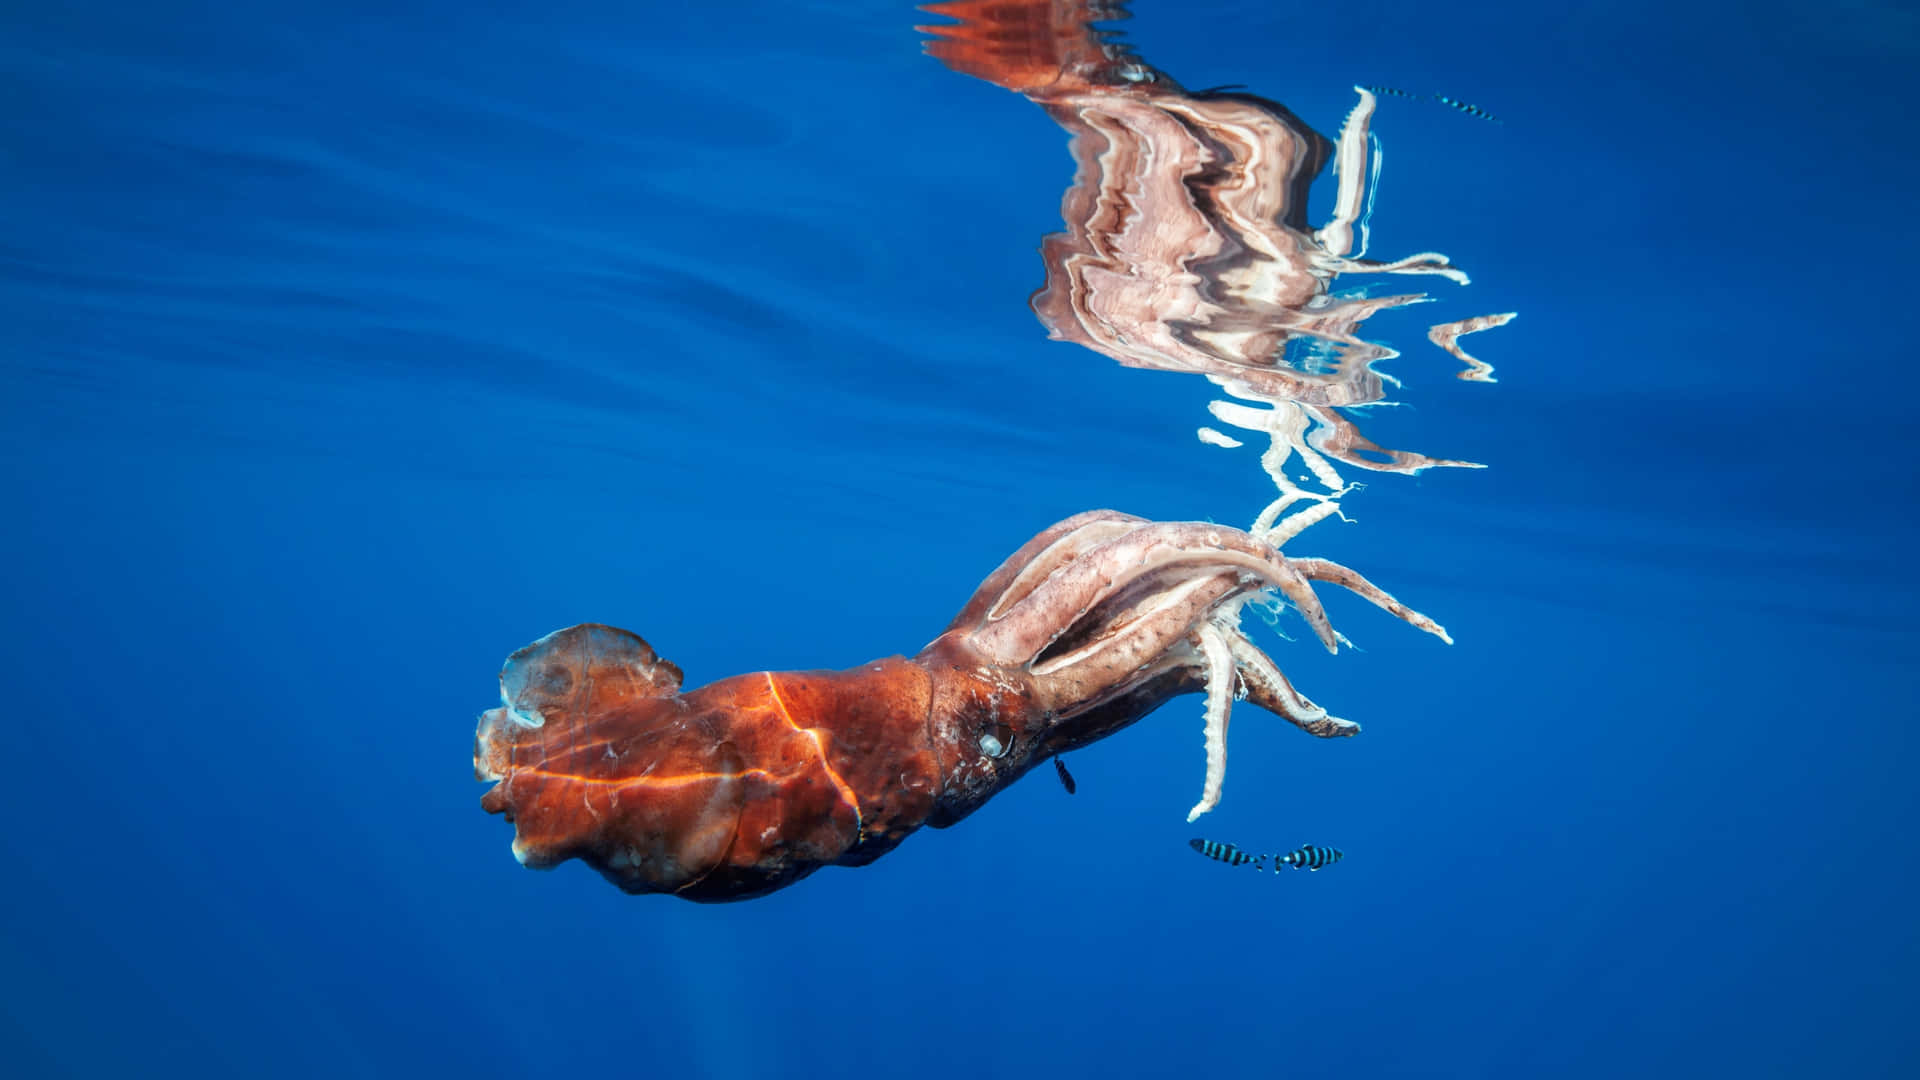 Giant Squid in its Natural Habitat